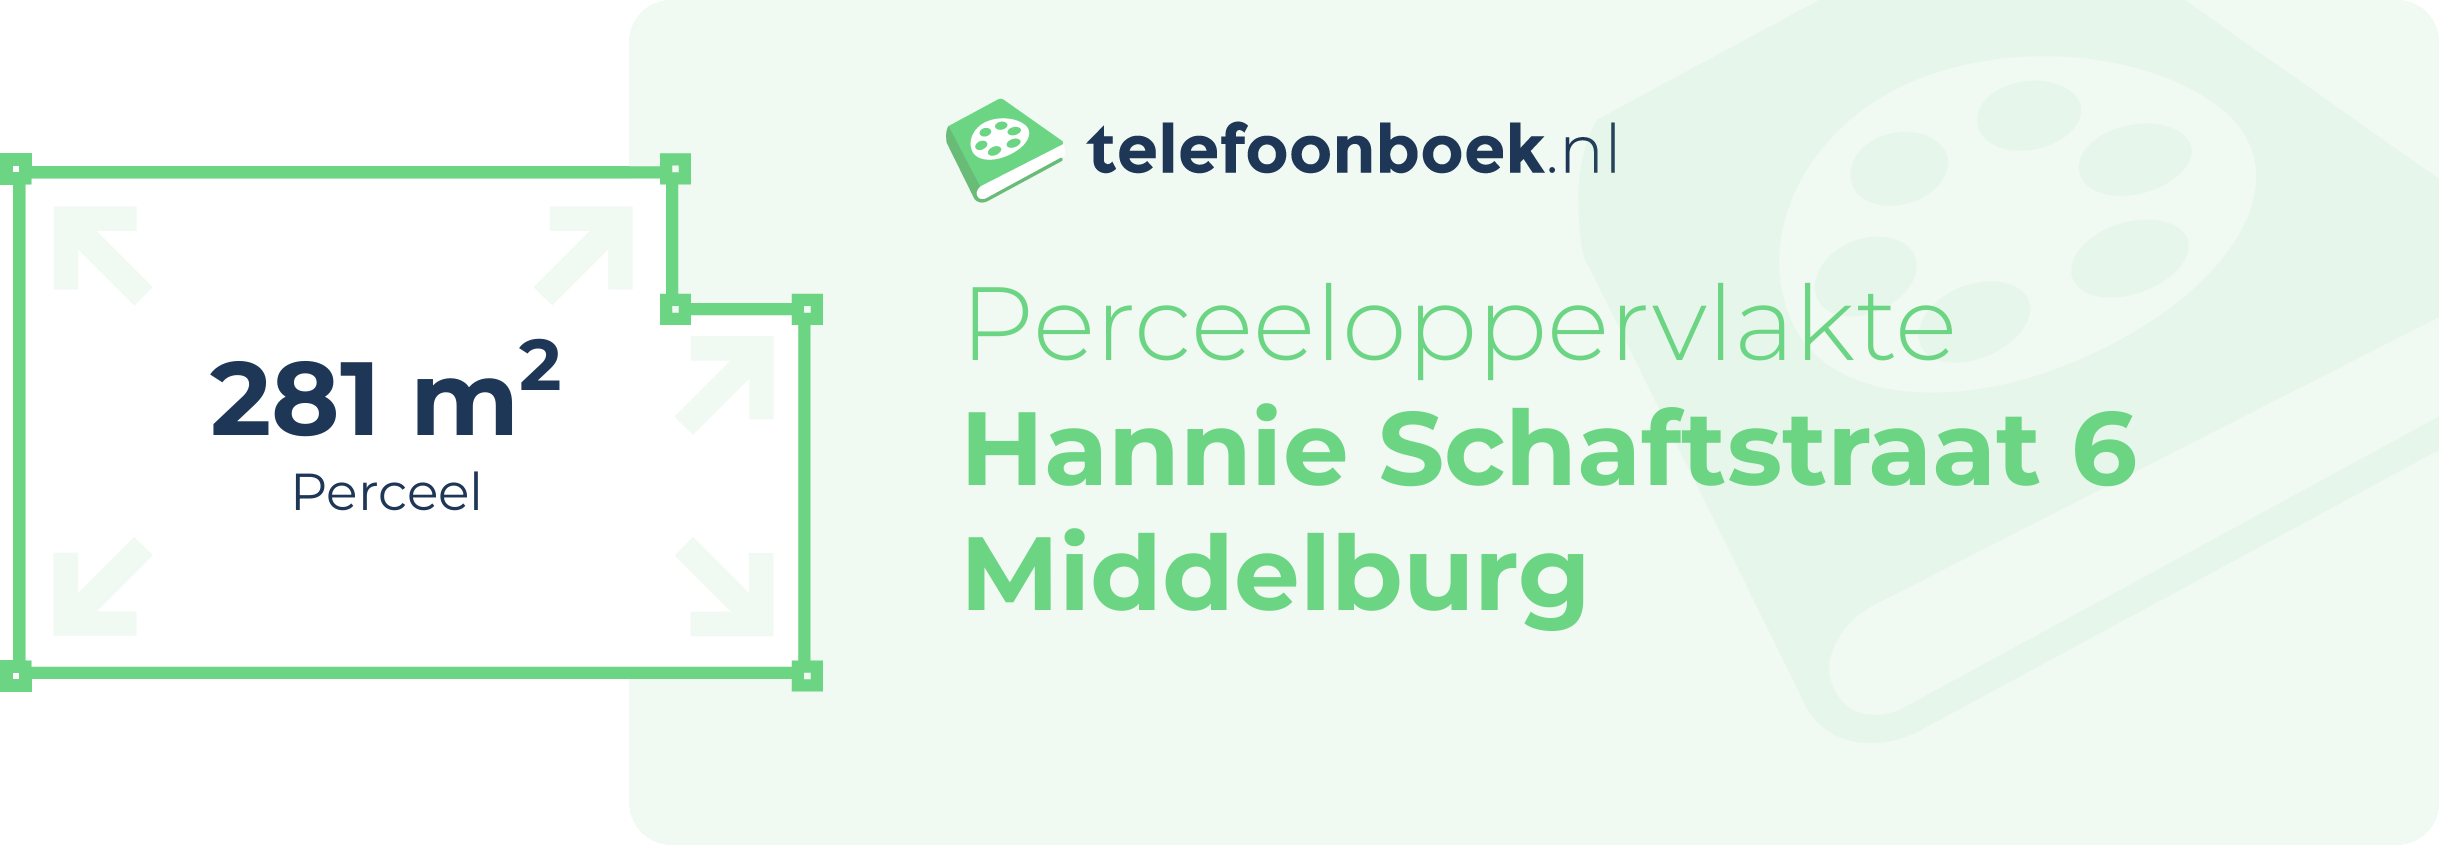 Perceeloppervlakte Hannie Schaftstraat 6 Middelburg